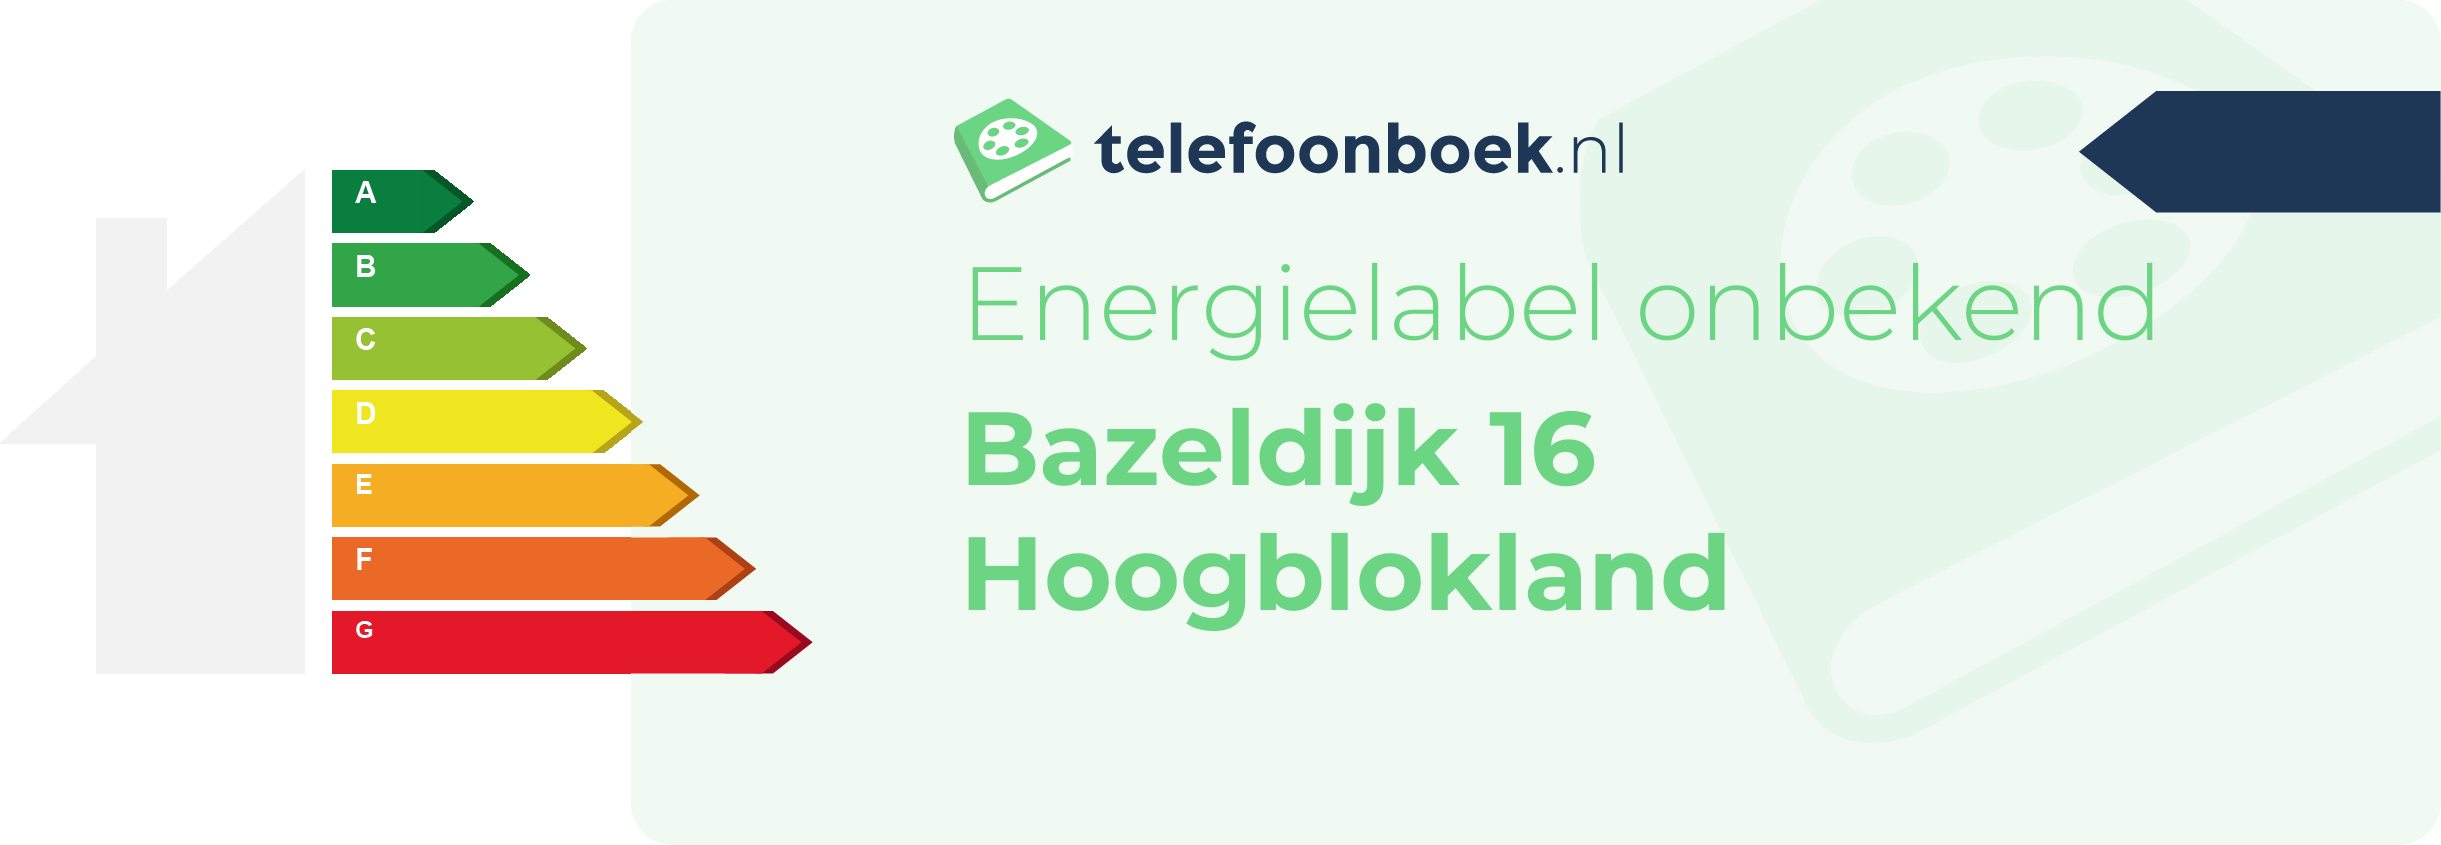 Energielabel Bazeldijk 16 Hoogblokland